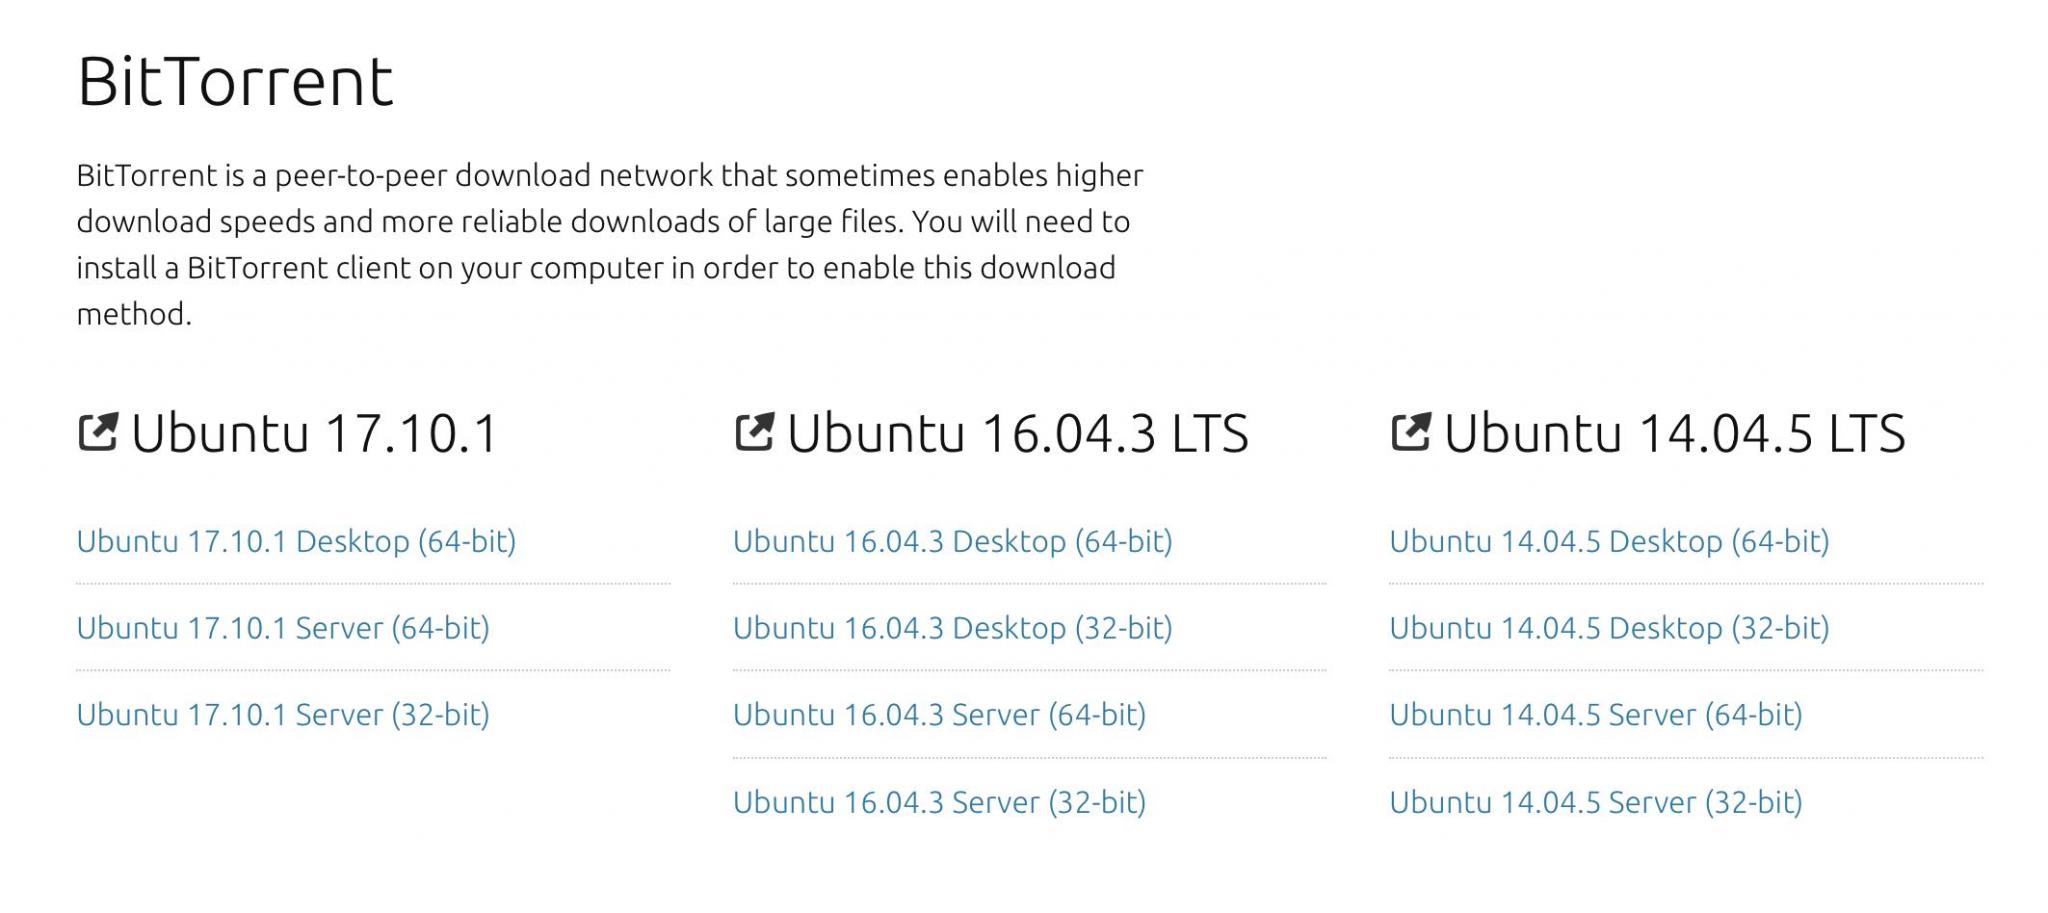 Große Files wie Linux-Distributionen laden über das Torrent-Netzwerk deutlich schneller als direkte Downloads.